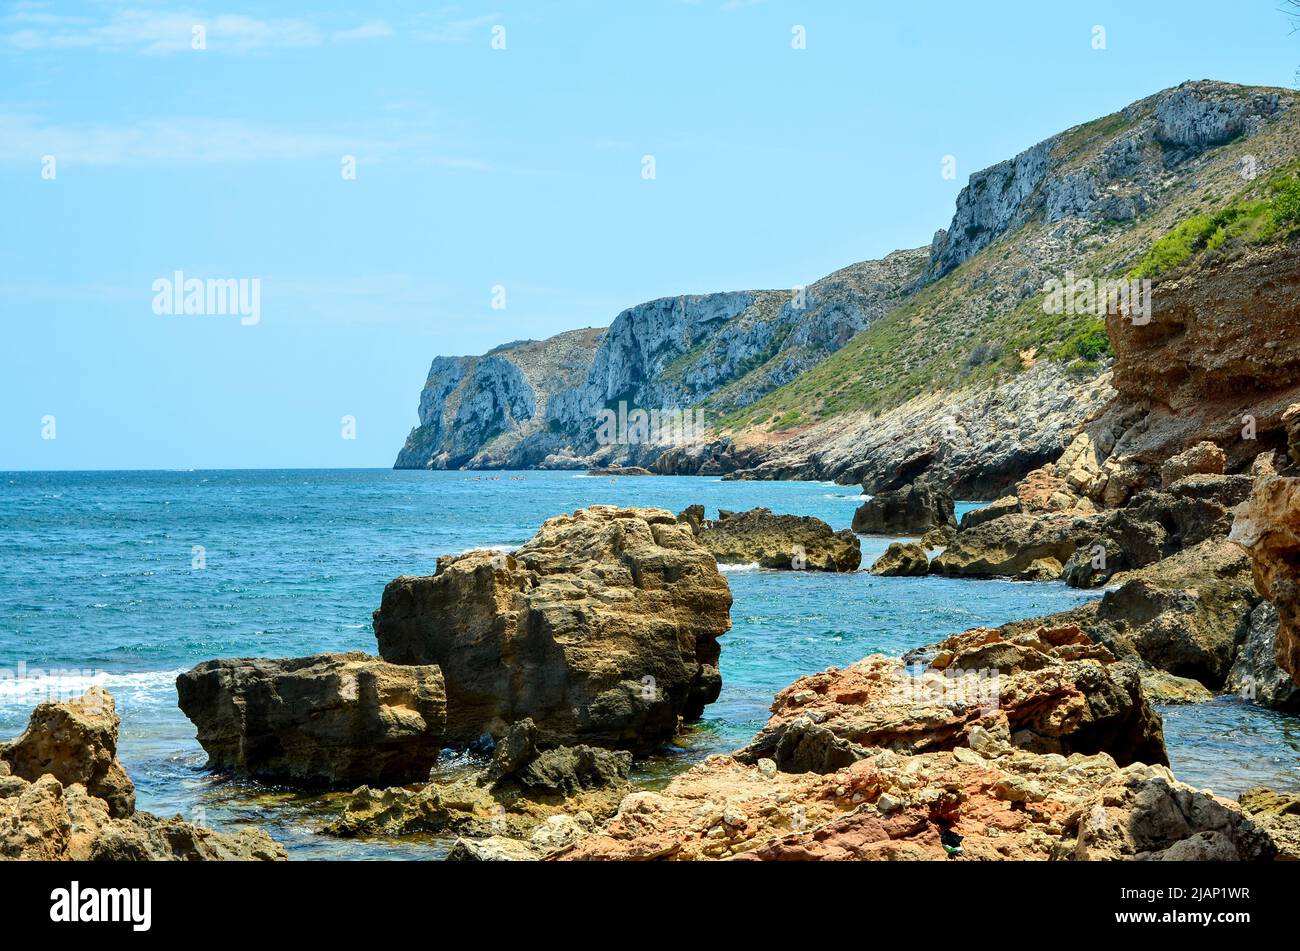 Felsen im Wasser an der Mittelmeerküste Spaniens mit Blick auf die Klippen und Berge an der Küste und das Meer unter blauem, sonnigem Himmel Stockfoto